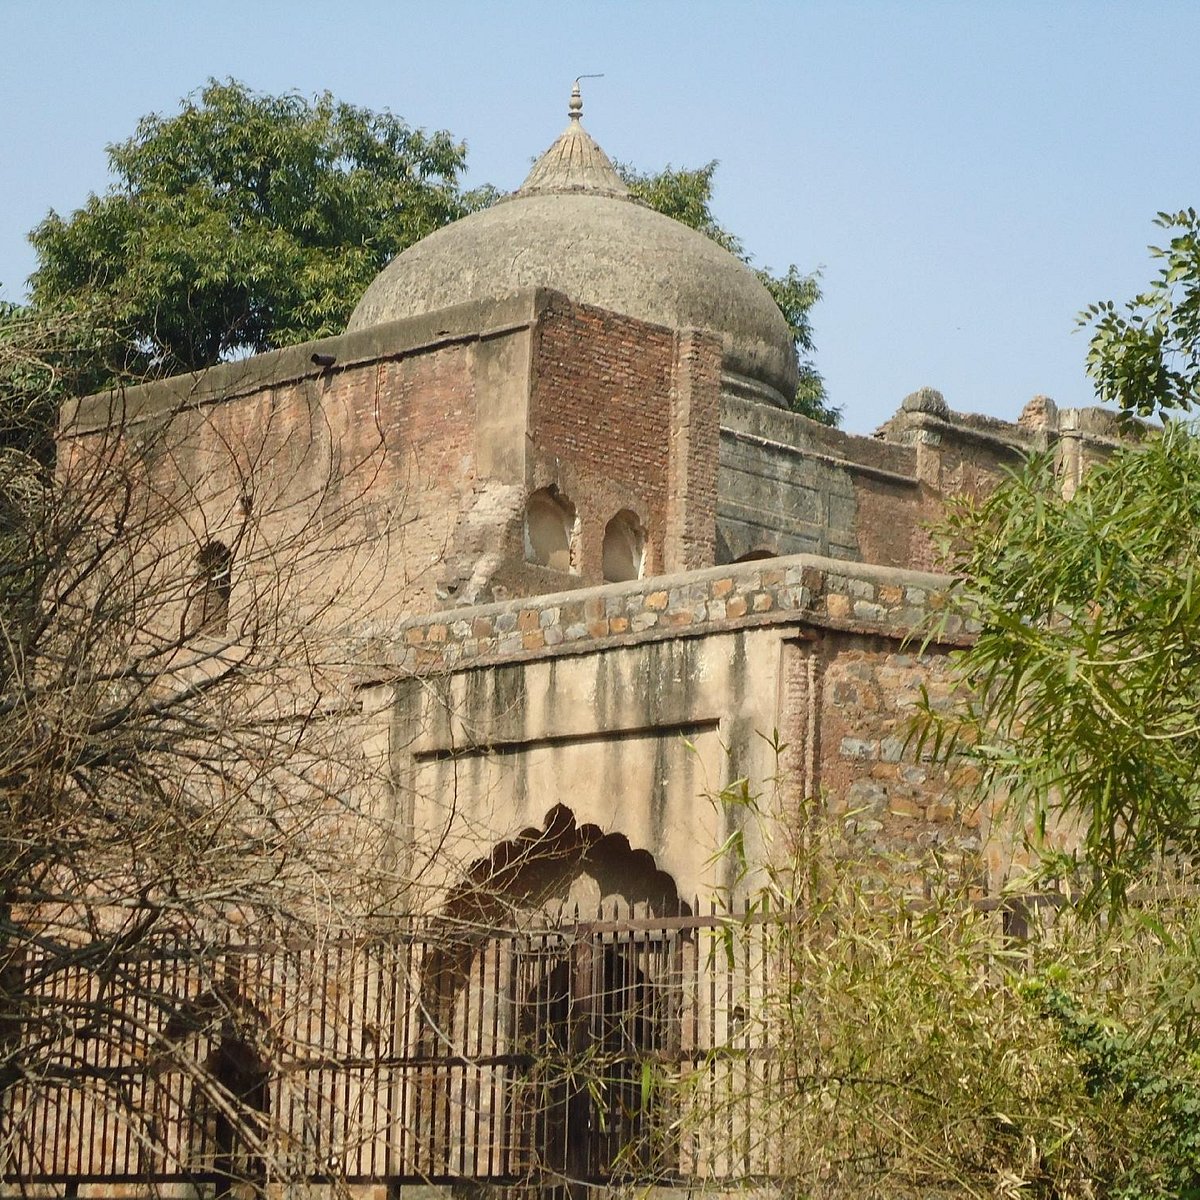 Chauburji-Masjid, New Delhi